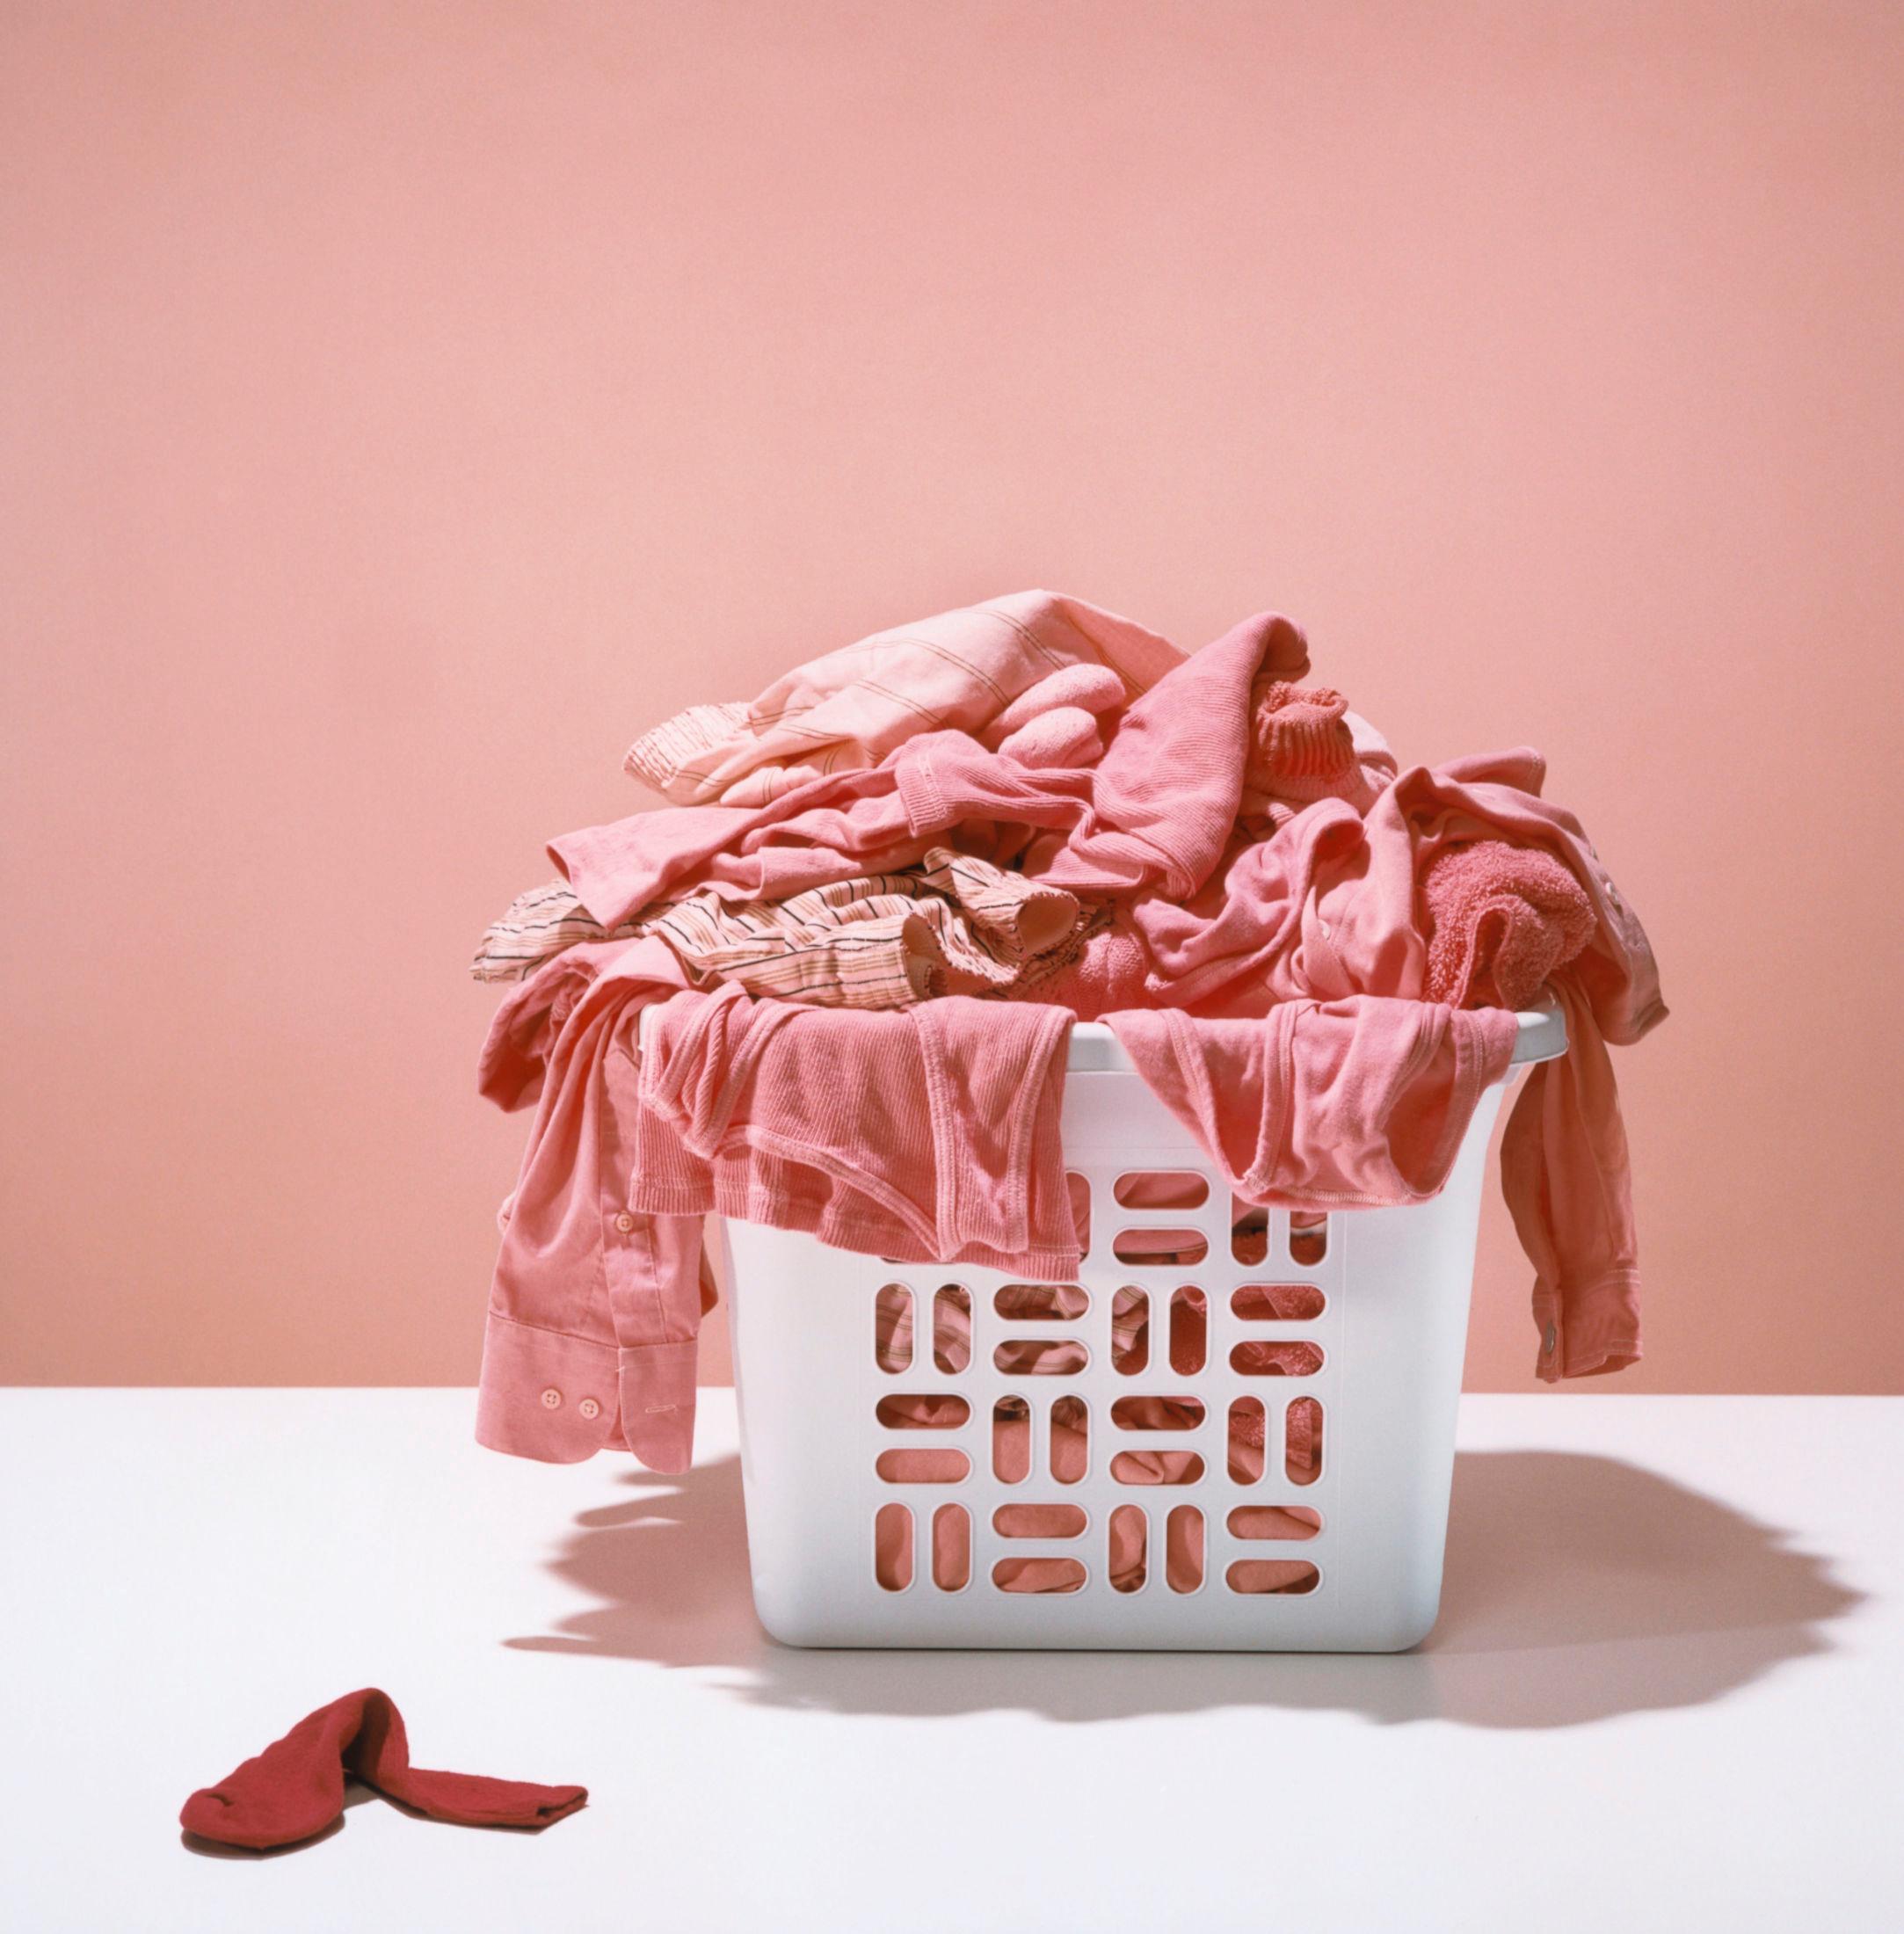 FØLG VASKEANVISNINGEN: Hvis du ikke sorterer klærne dine kan du plutselig få en hel vaskekurv full av rosa klær. Foto: Getty Images